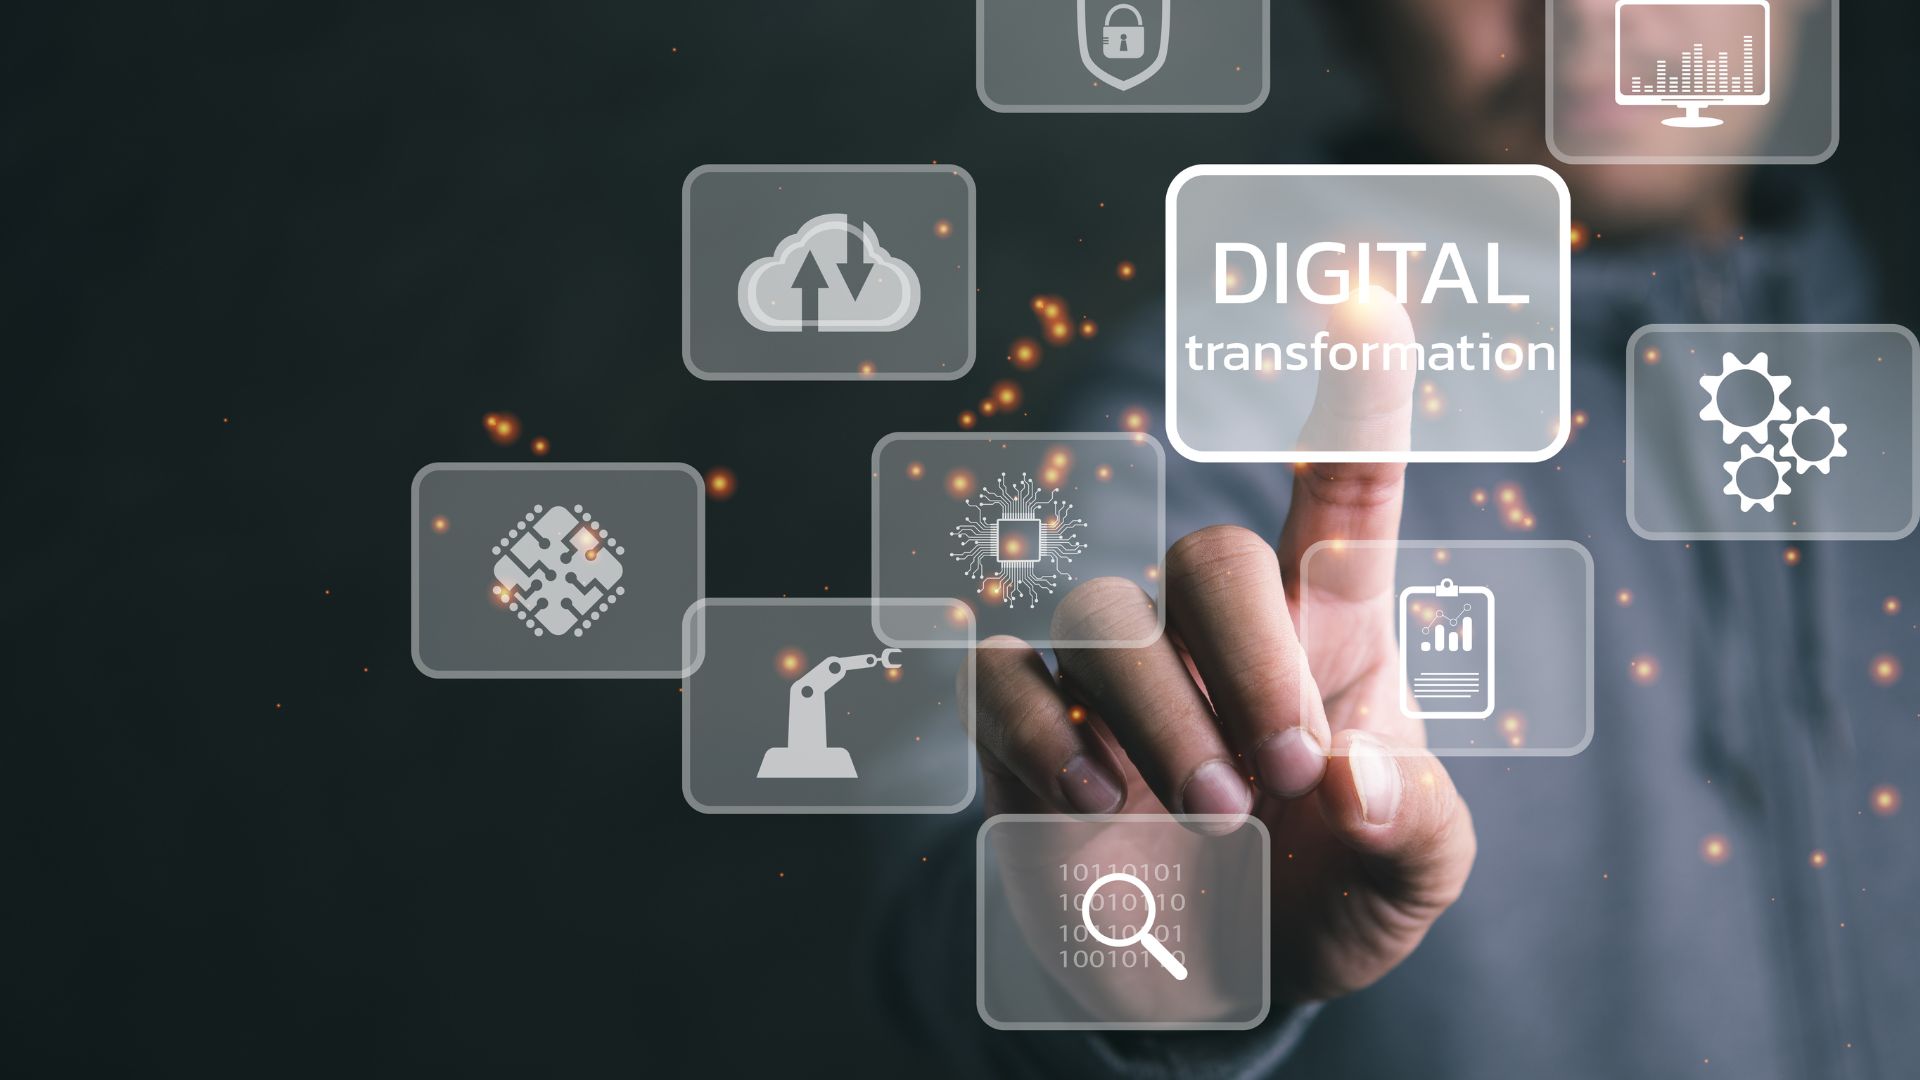 Membangun Fondasi Digital untuk Infrastruktur Teknologi Transformasi Digital